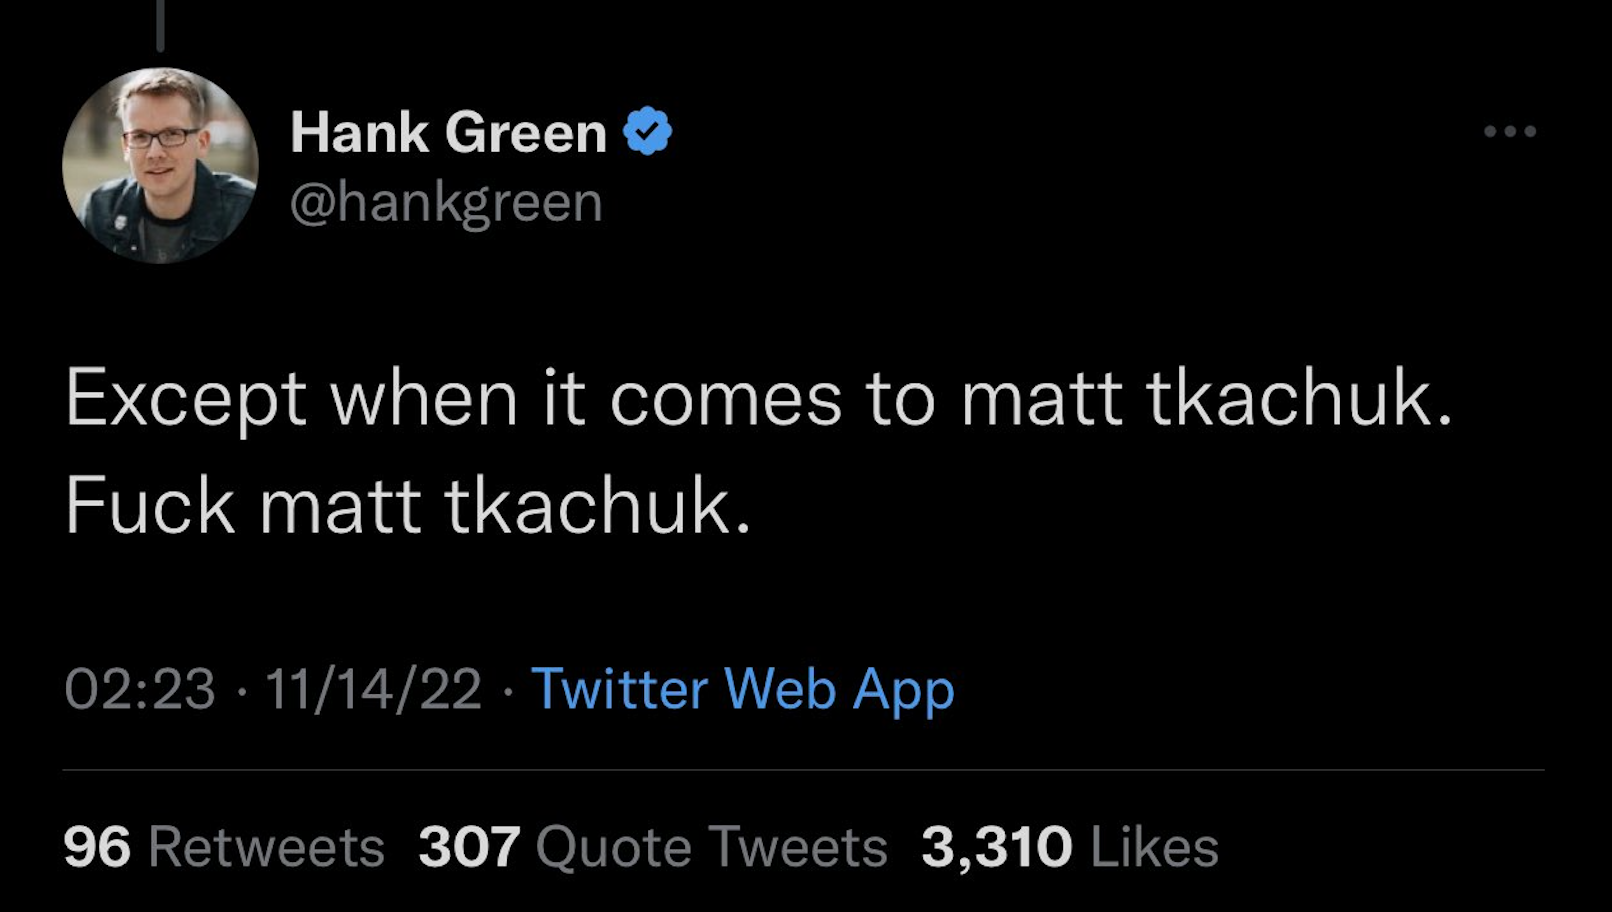 Tweet from @hankgreen that reads “Except when it comes to matt tkachuk. Fuck matt tkachuk.”